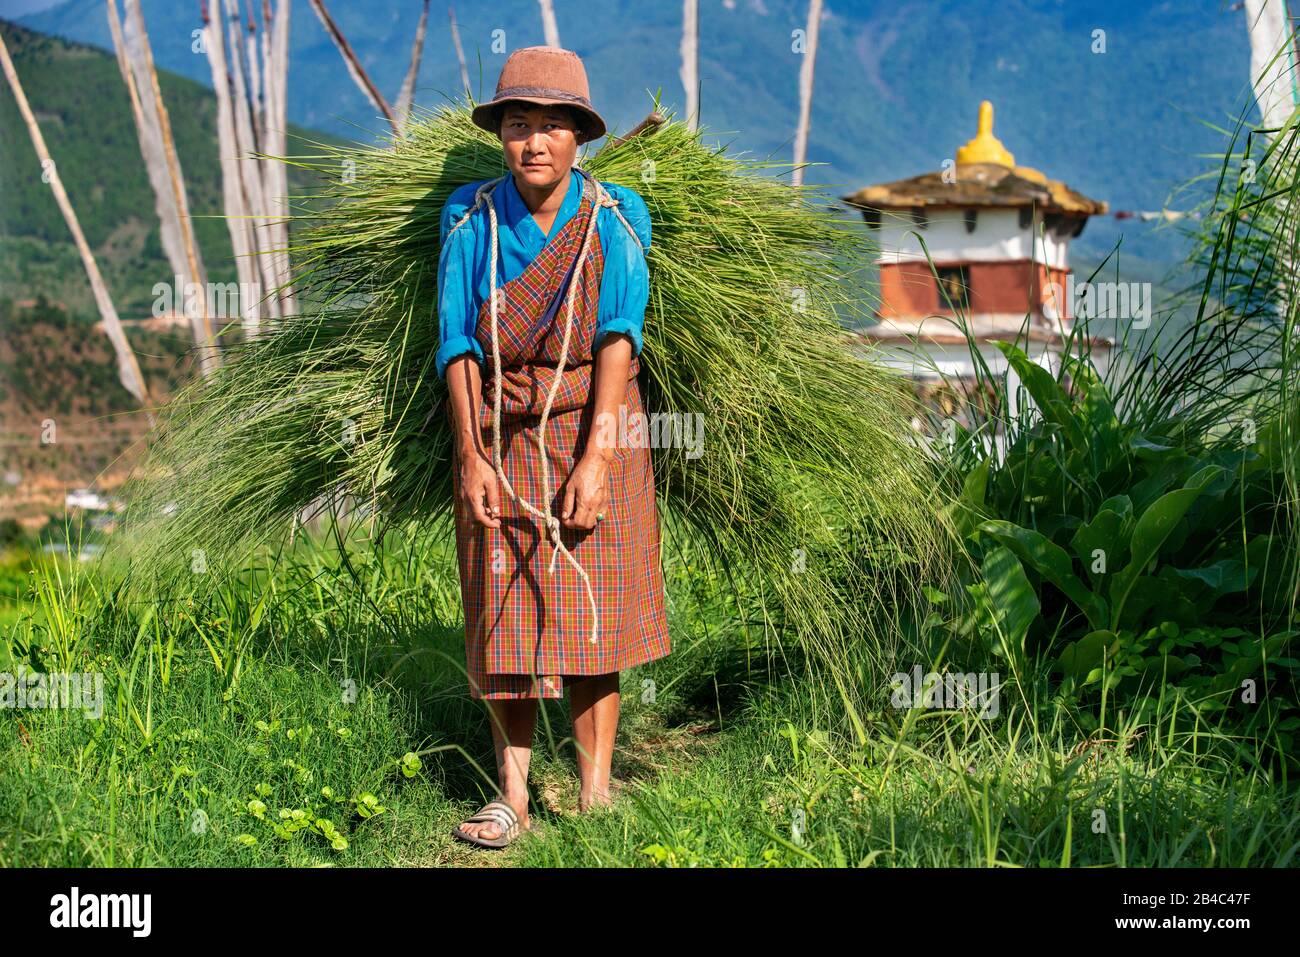 Bhutanese Village Woman Bhutan Banque d'image et photos - Alamy